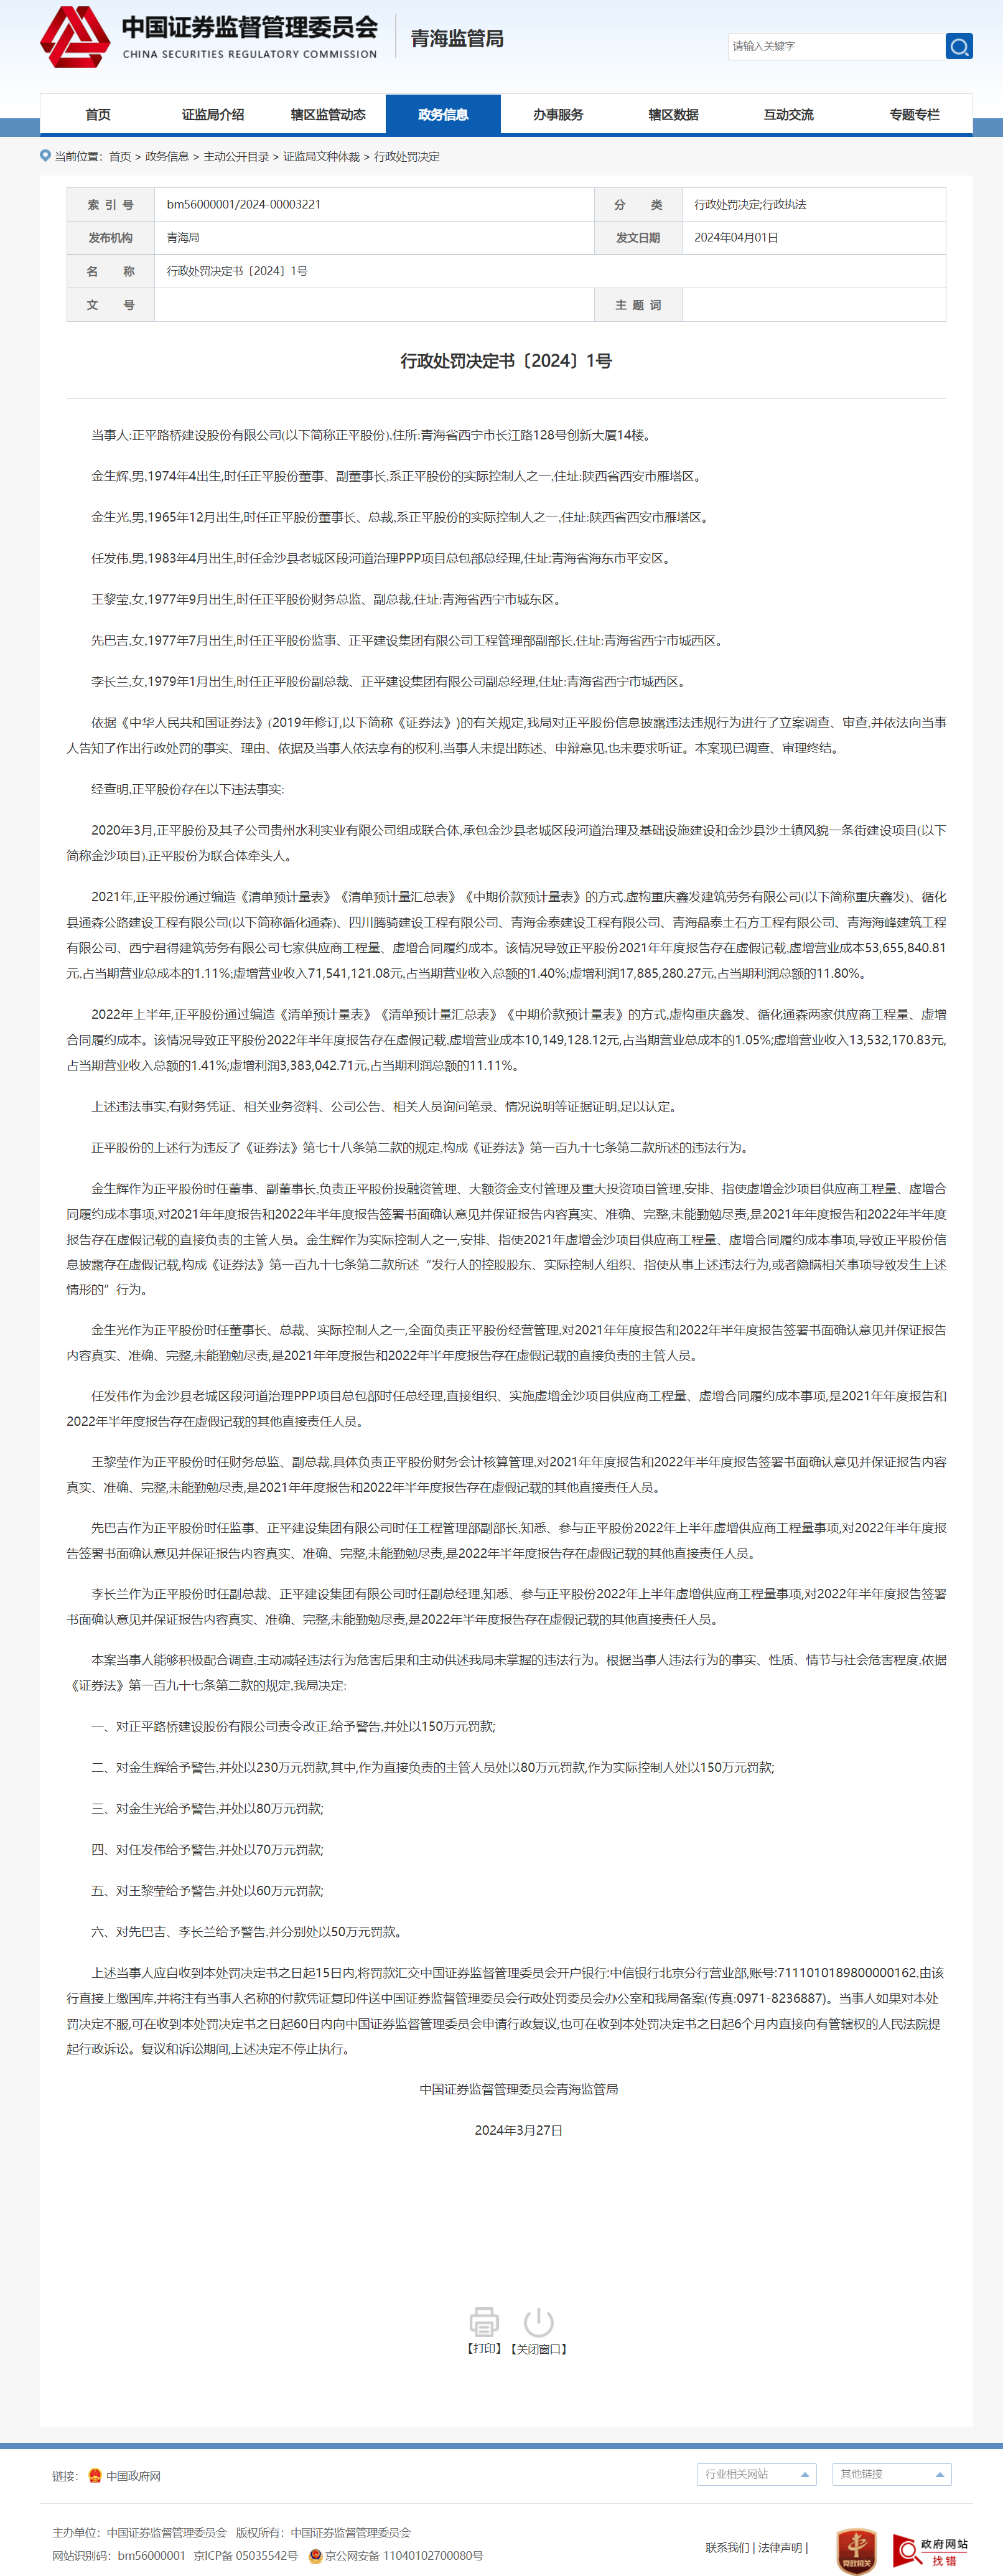 (图源:中国证券监督管理委员会青海监管局)行政处罚书如下:当事人:正